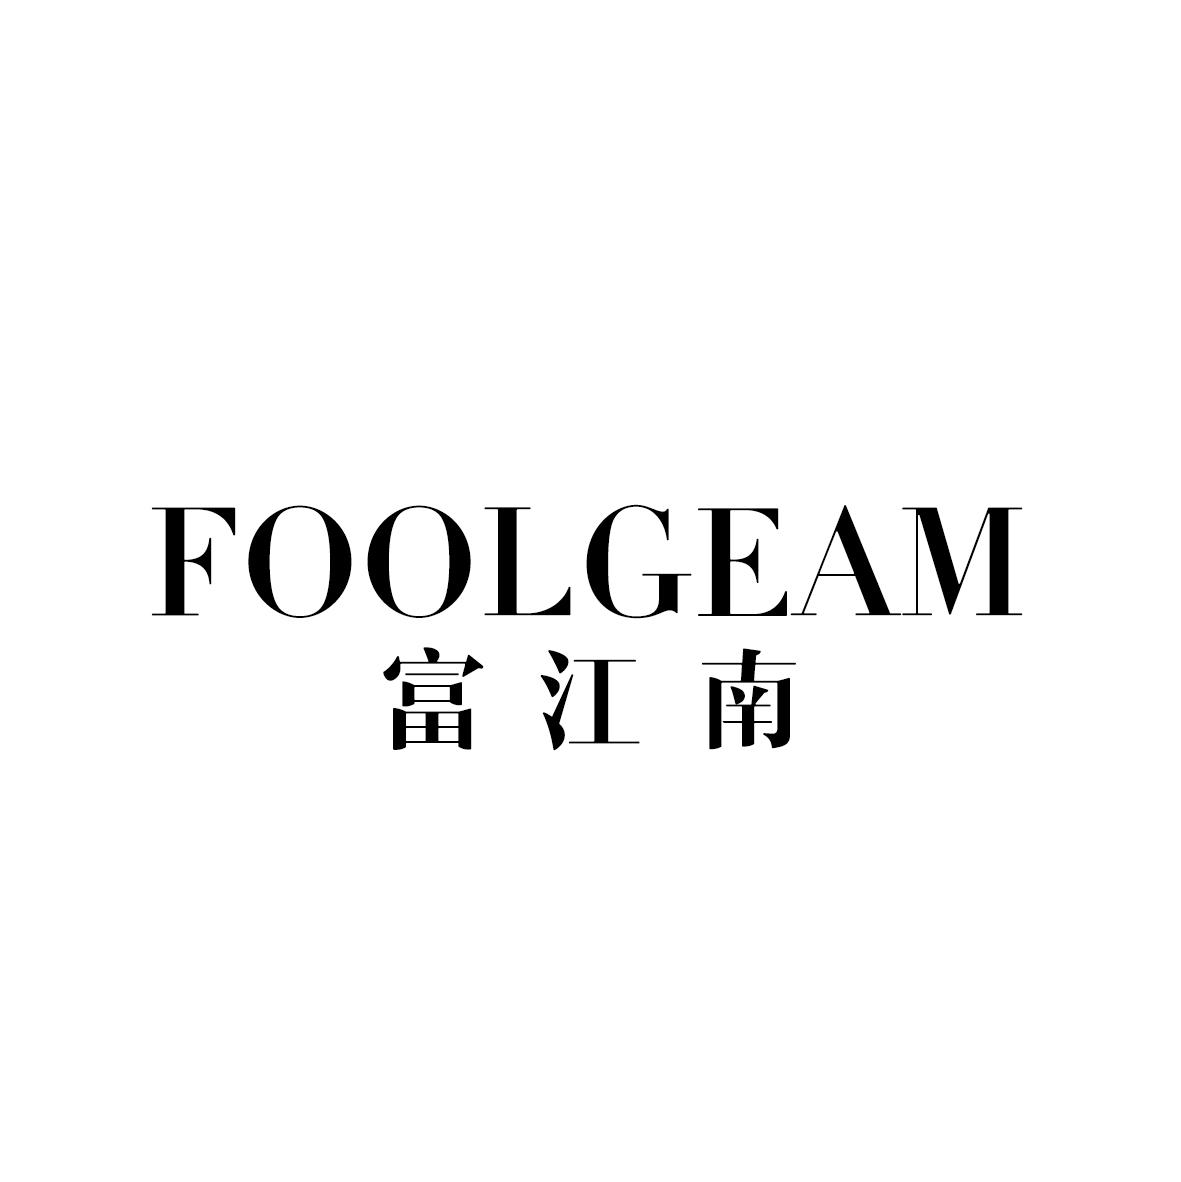 FOOLGEAM 富江南